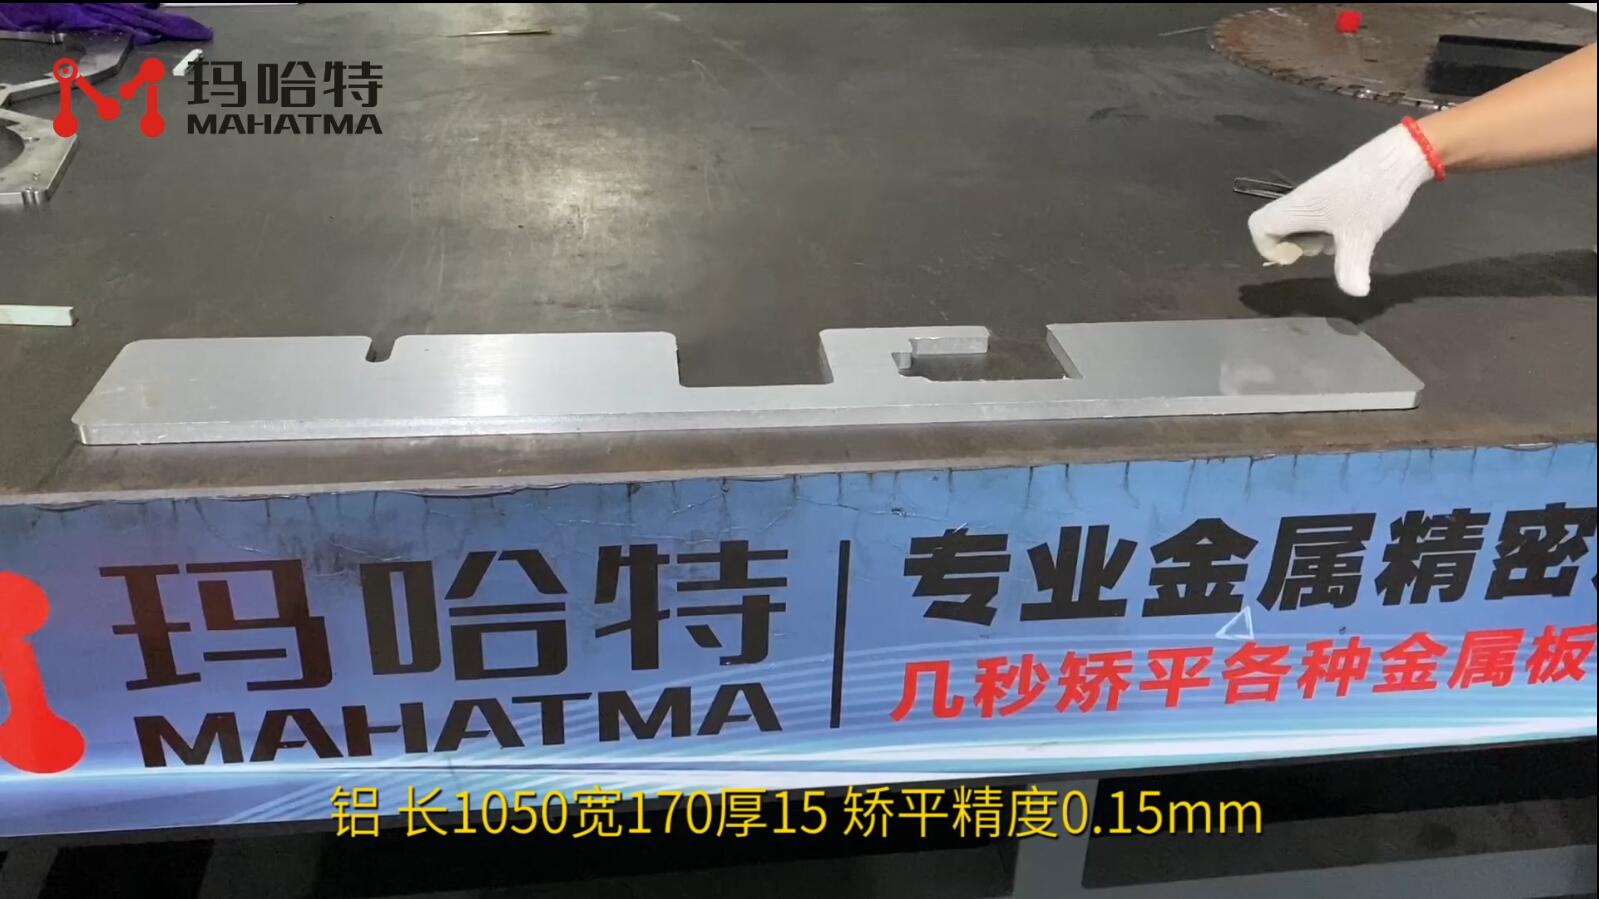 铝 MHT120-1300 异形 长1050宽170厚15 矫平精度0.15mm